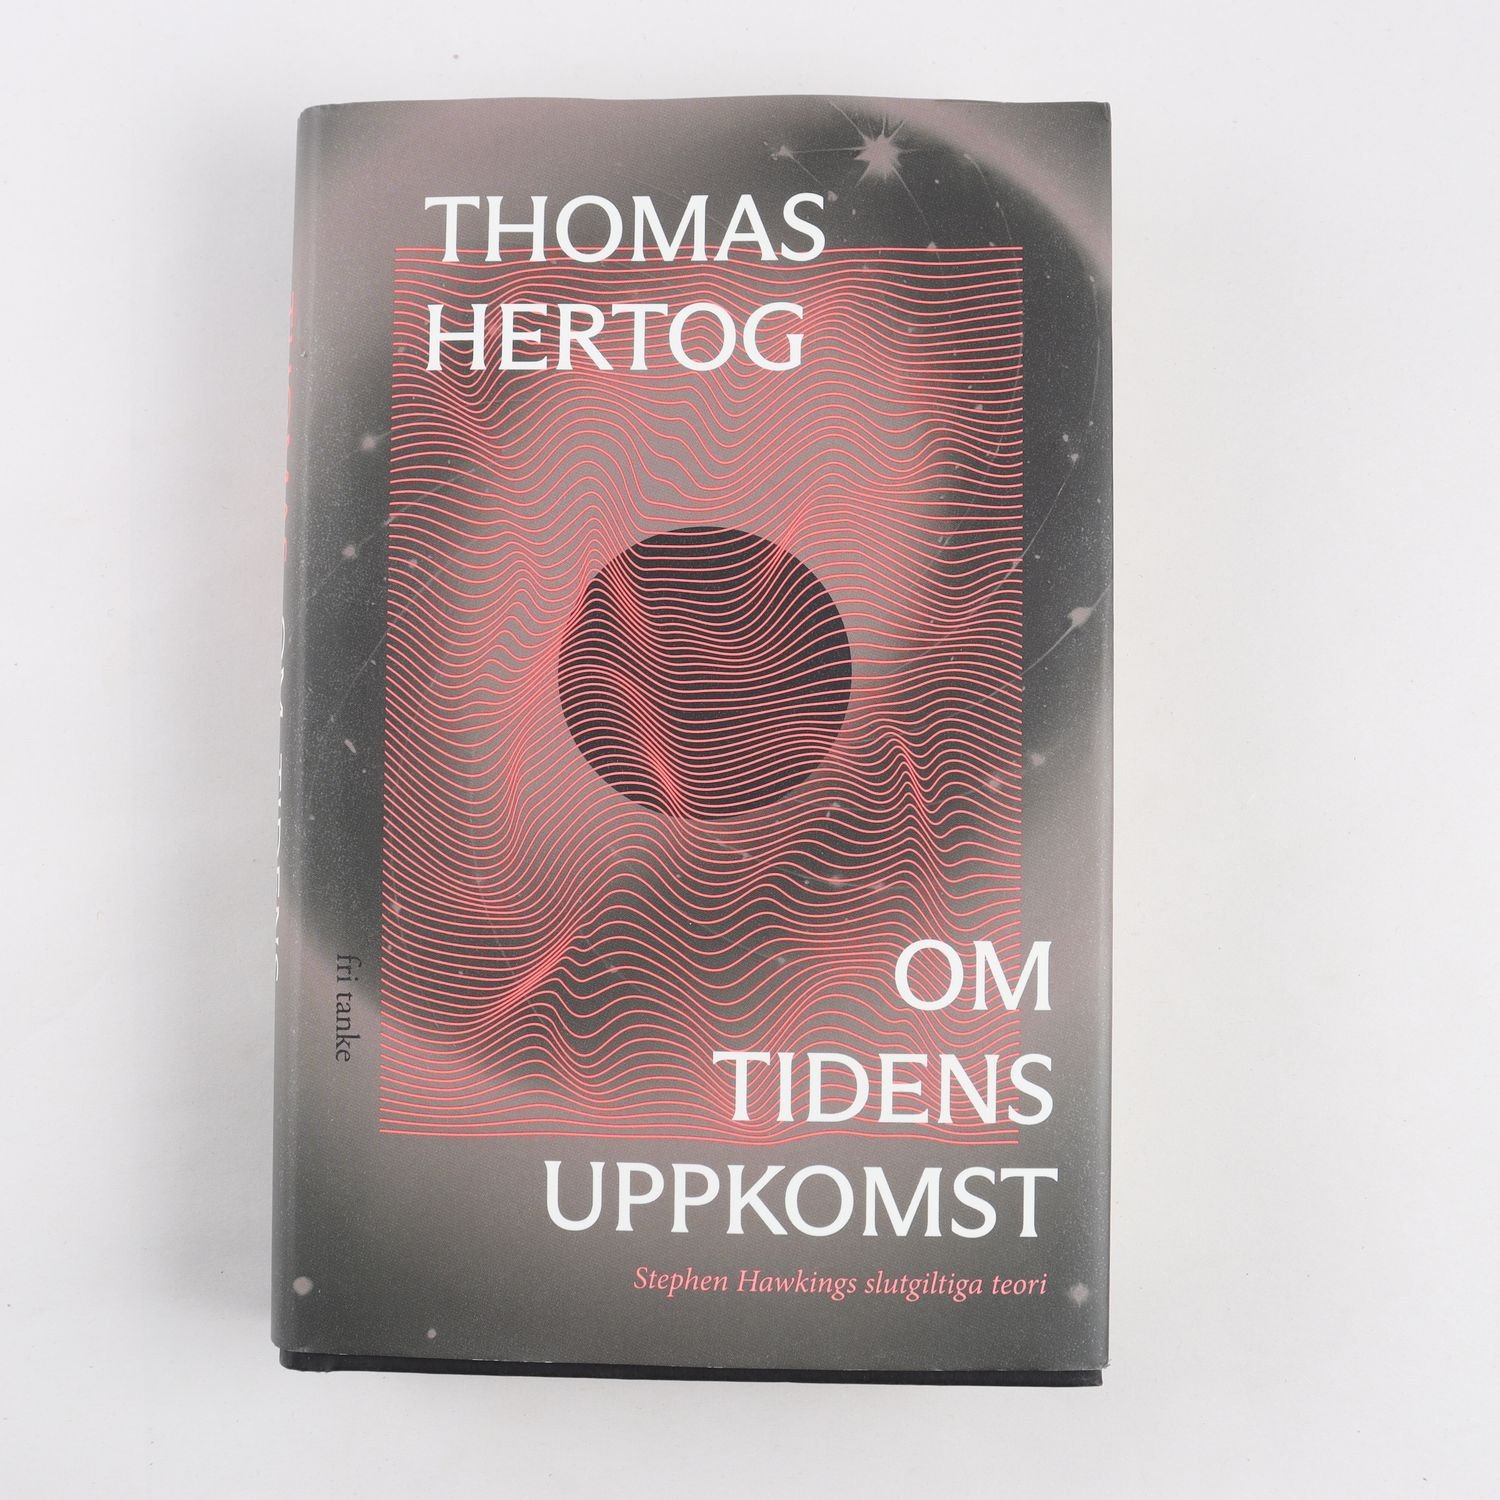 Thomas Hertog, Om tidens uppkomst